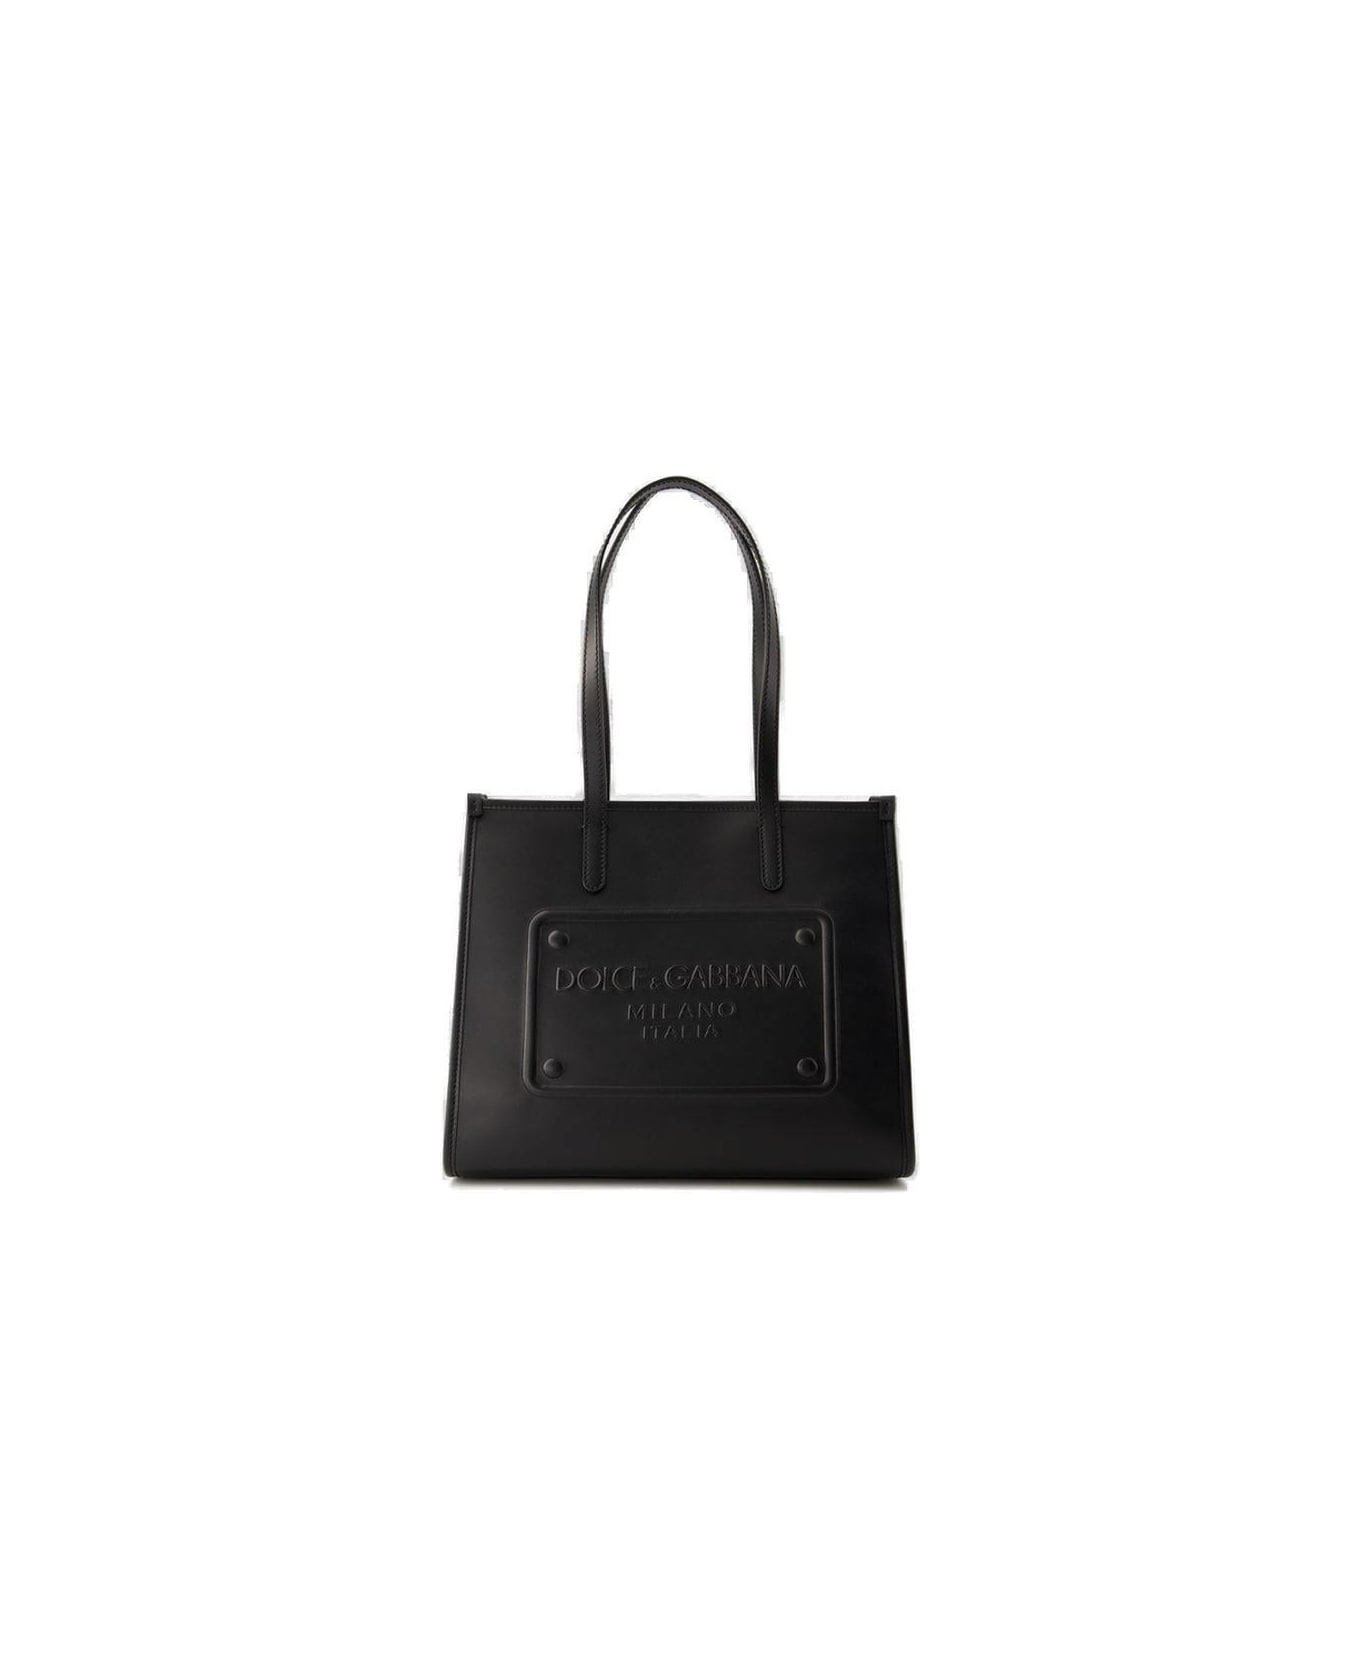 Dolce & Gabbana Shopping Bag - NERO